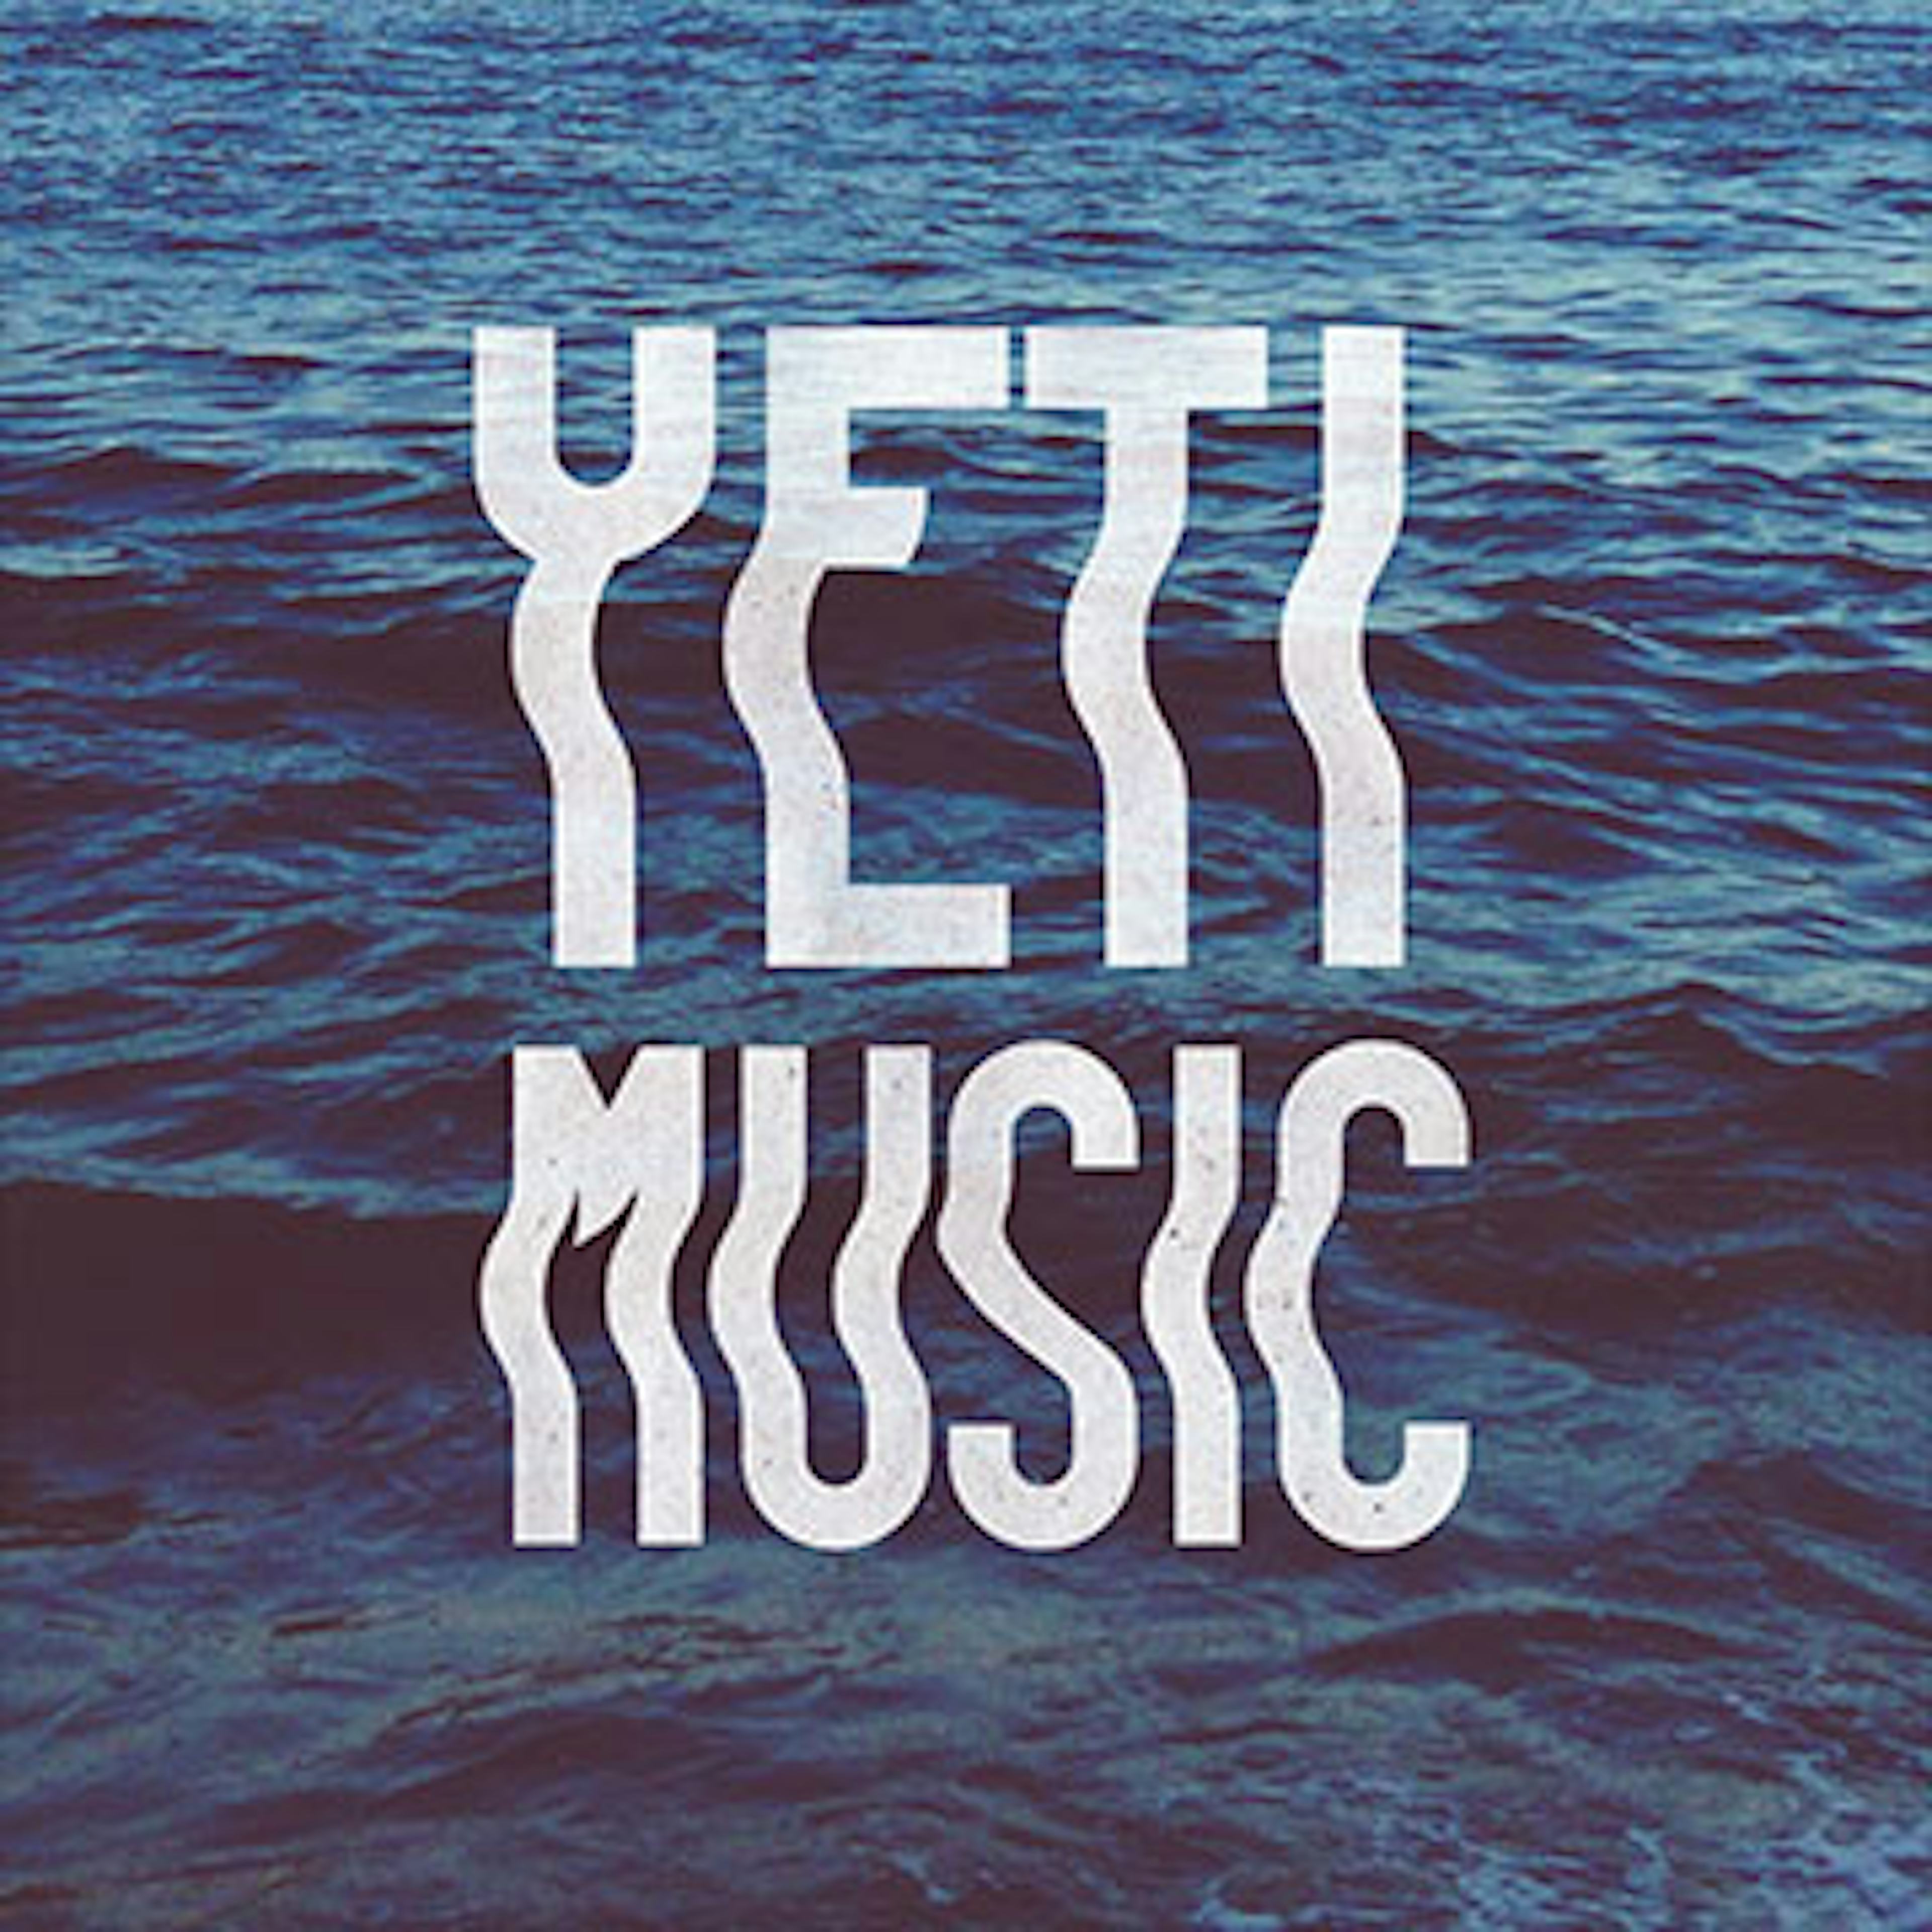 Yeti Music artwork